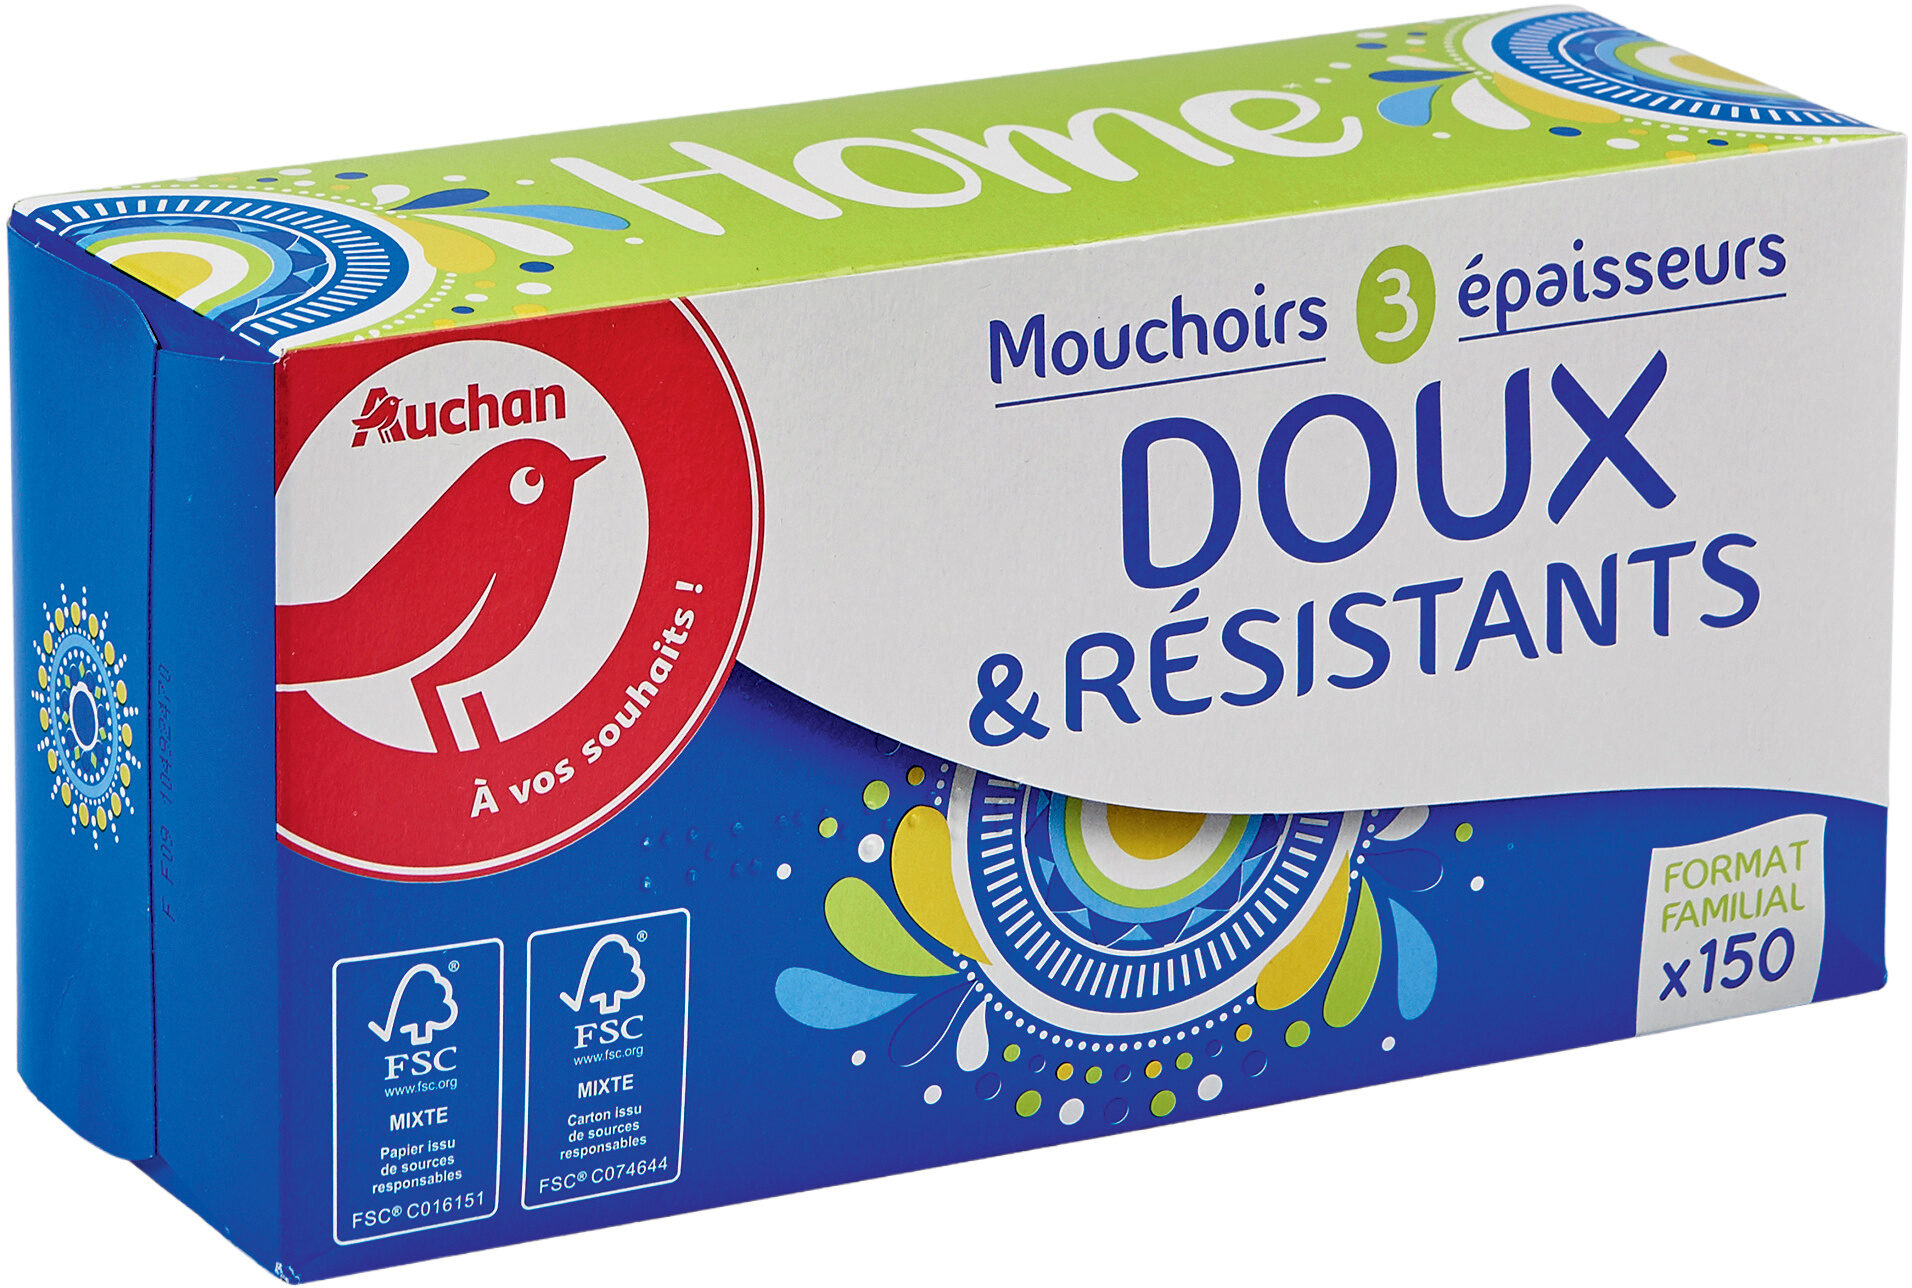 Auchan mouchoirs home boite x150 familiale doux et resistant - Produit - fr